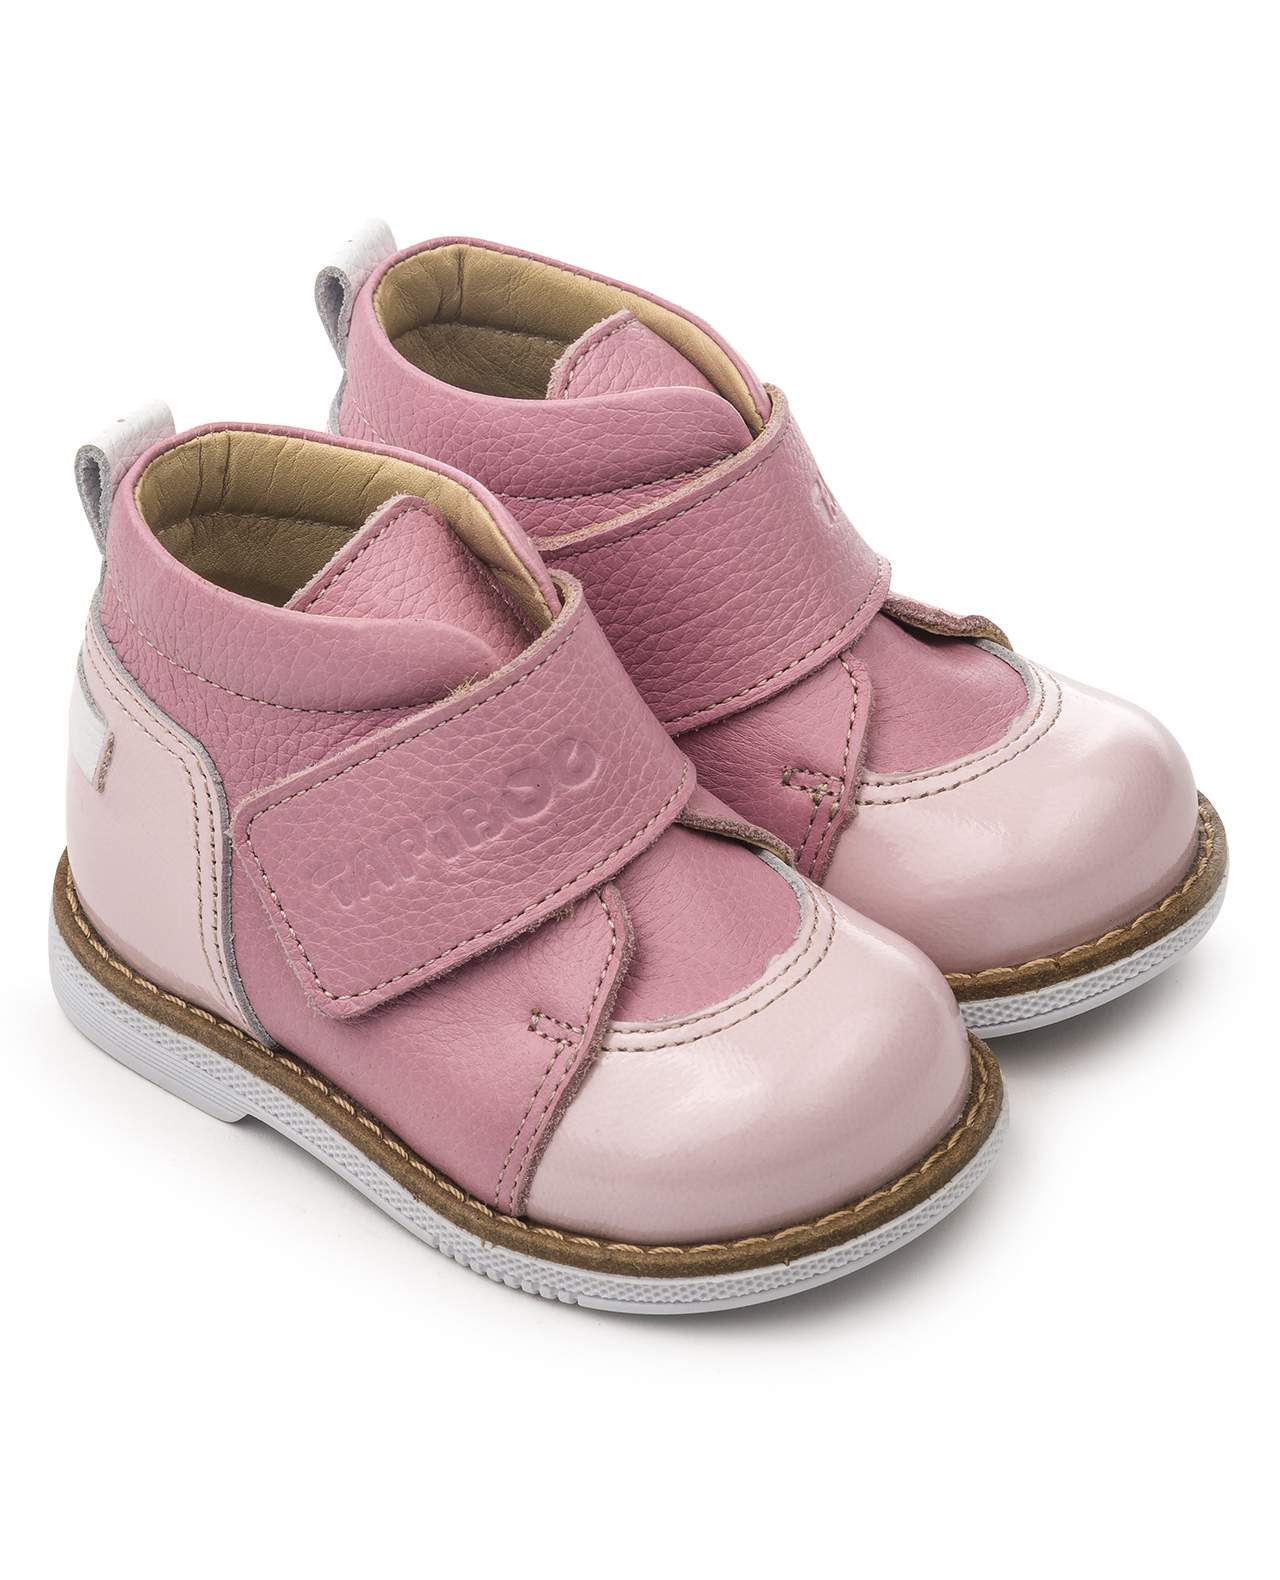 Ботинки Tapiboo FT-24015.18-OL05O.02 цв.розовый р.18